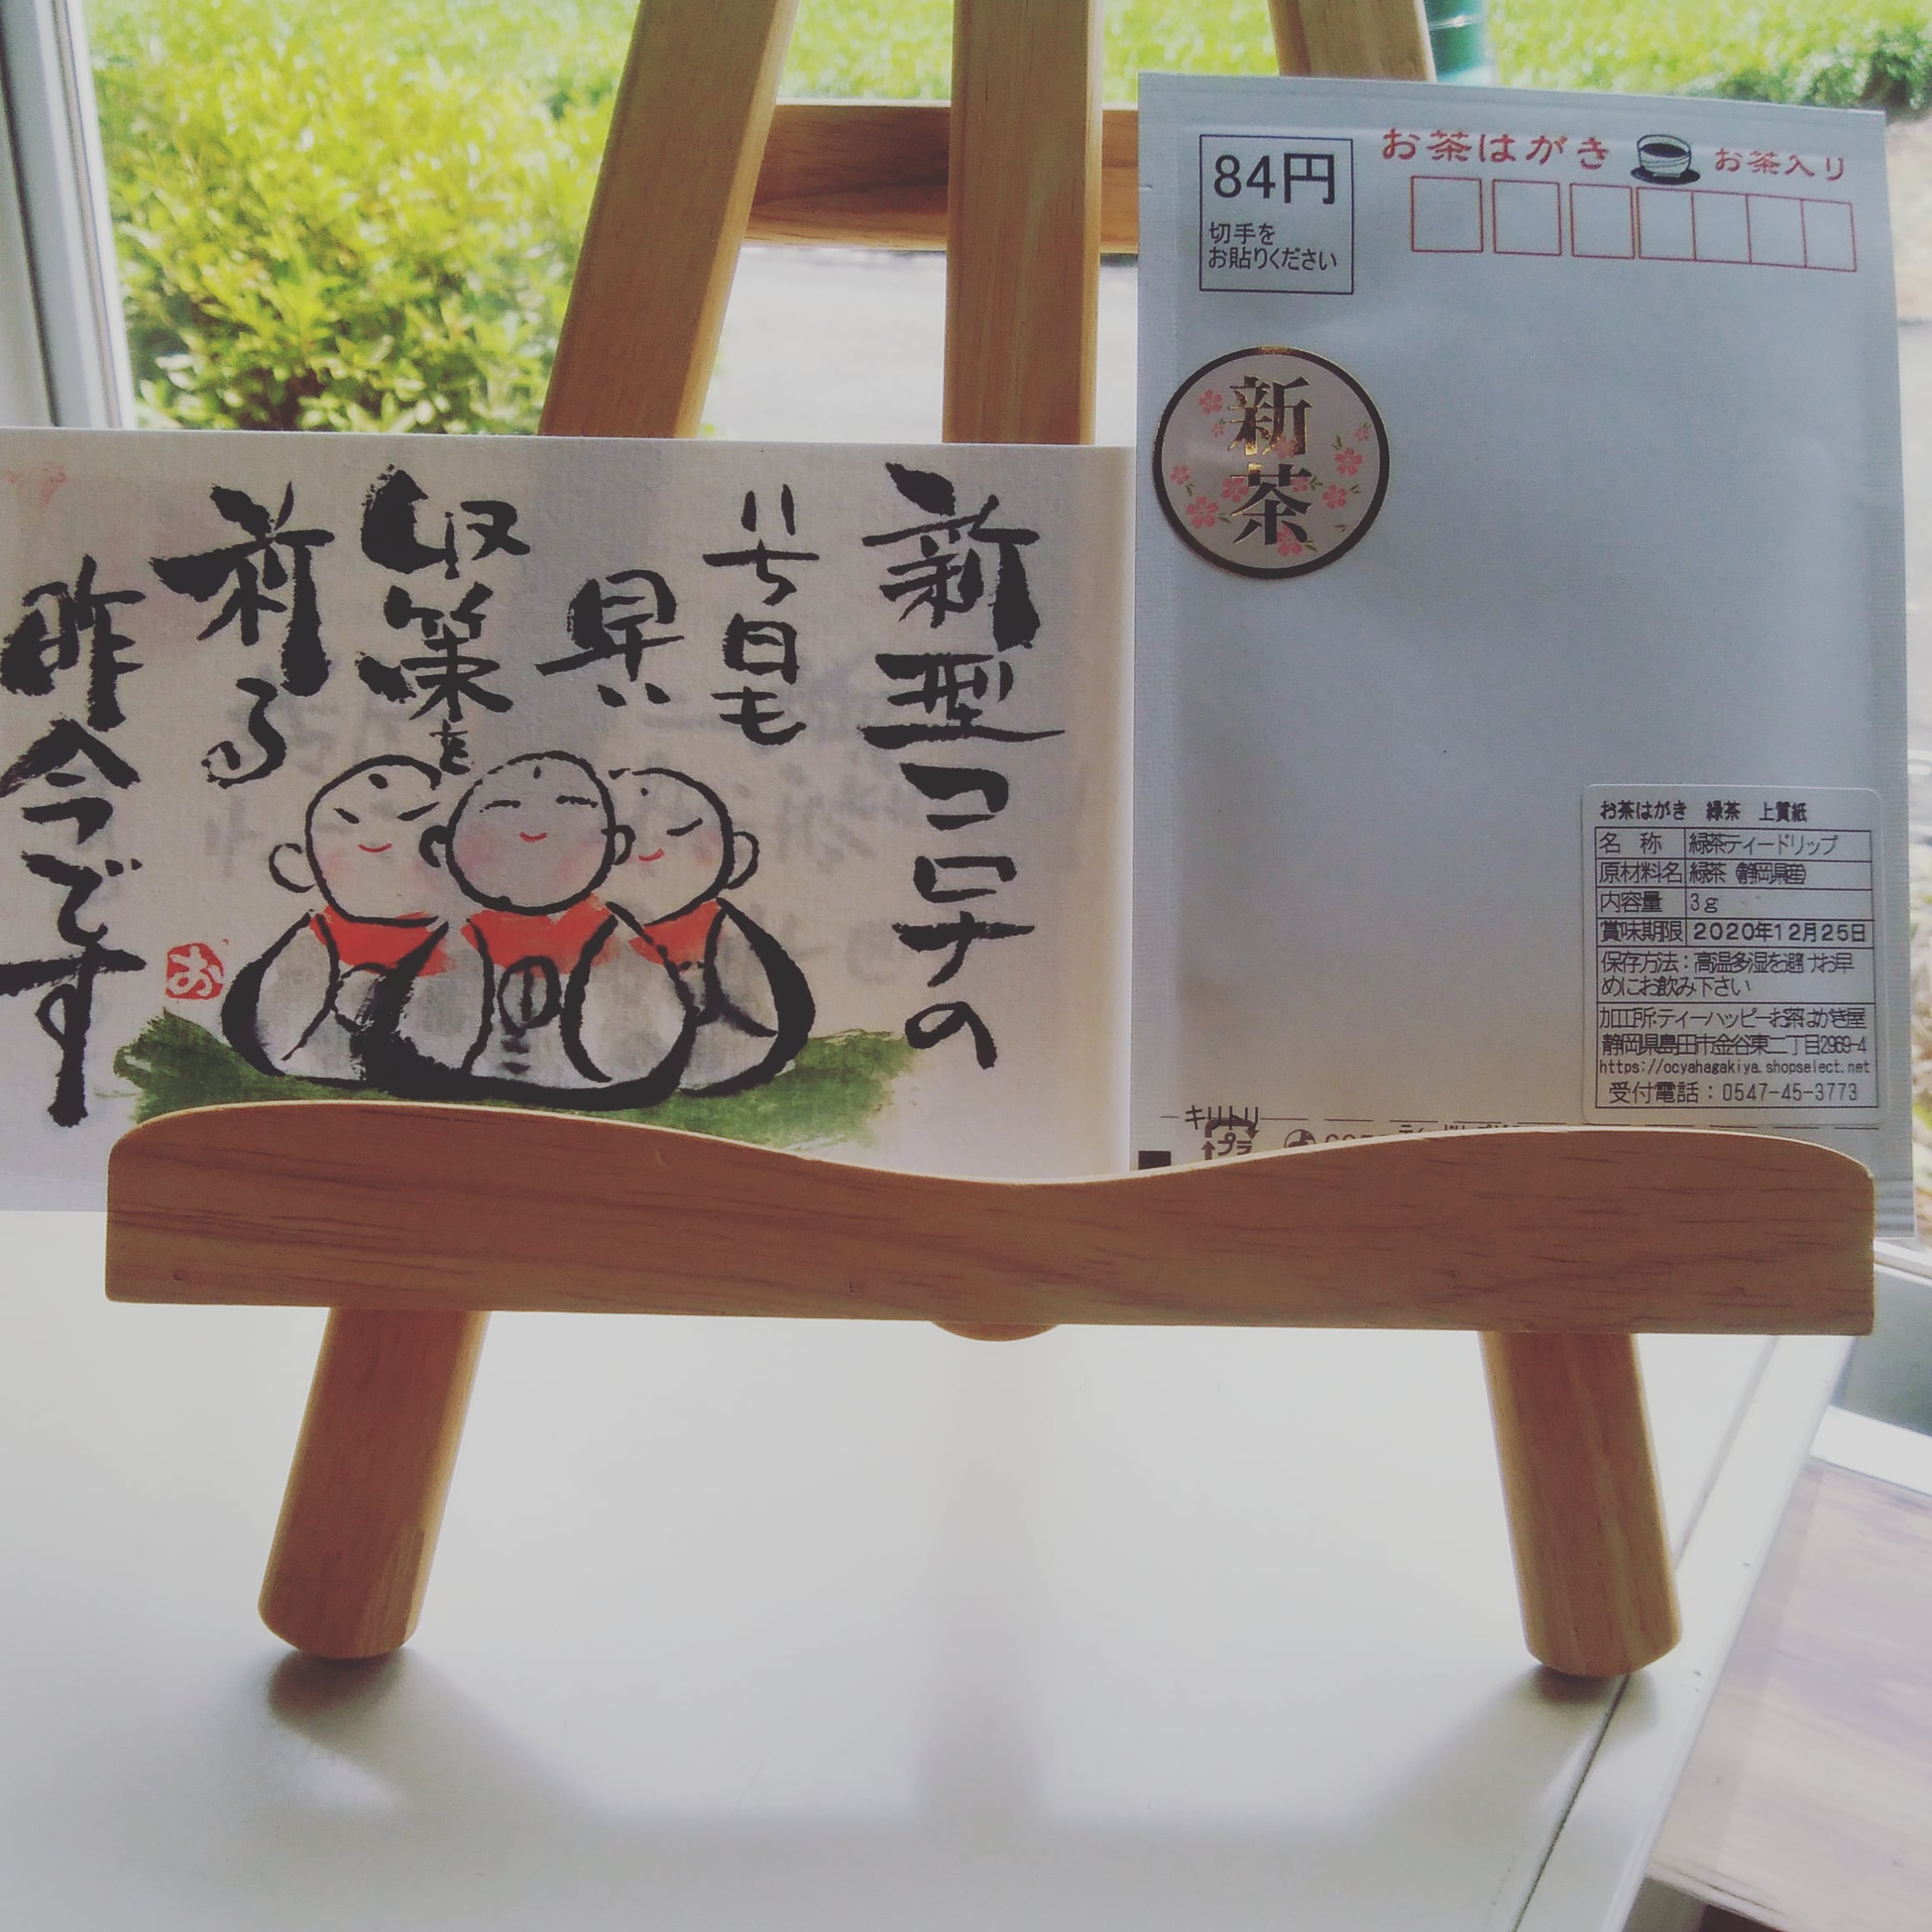 岡山県の岡本様から絵手紙が届きました！